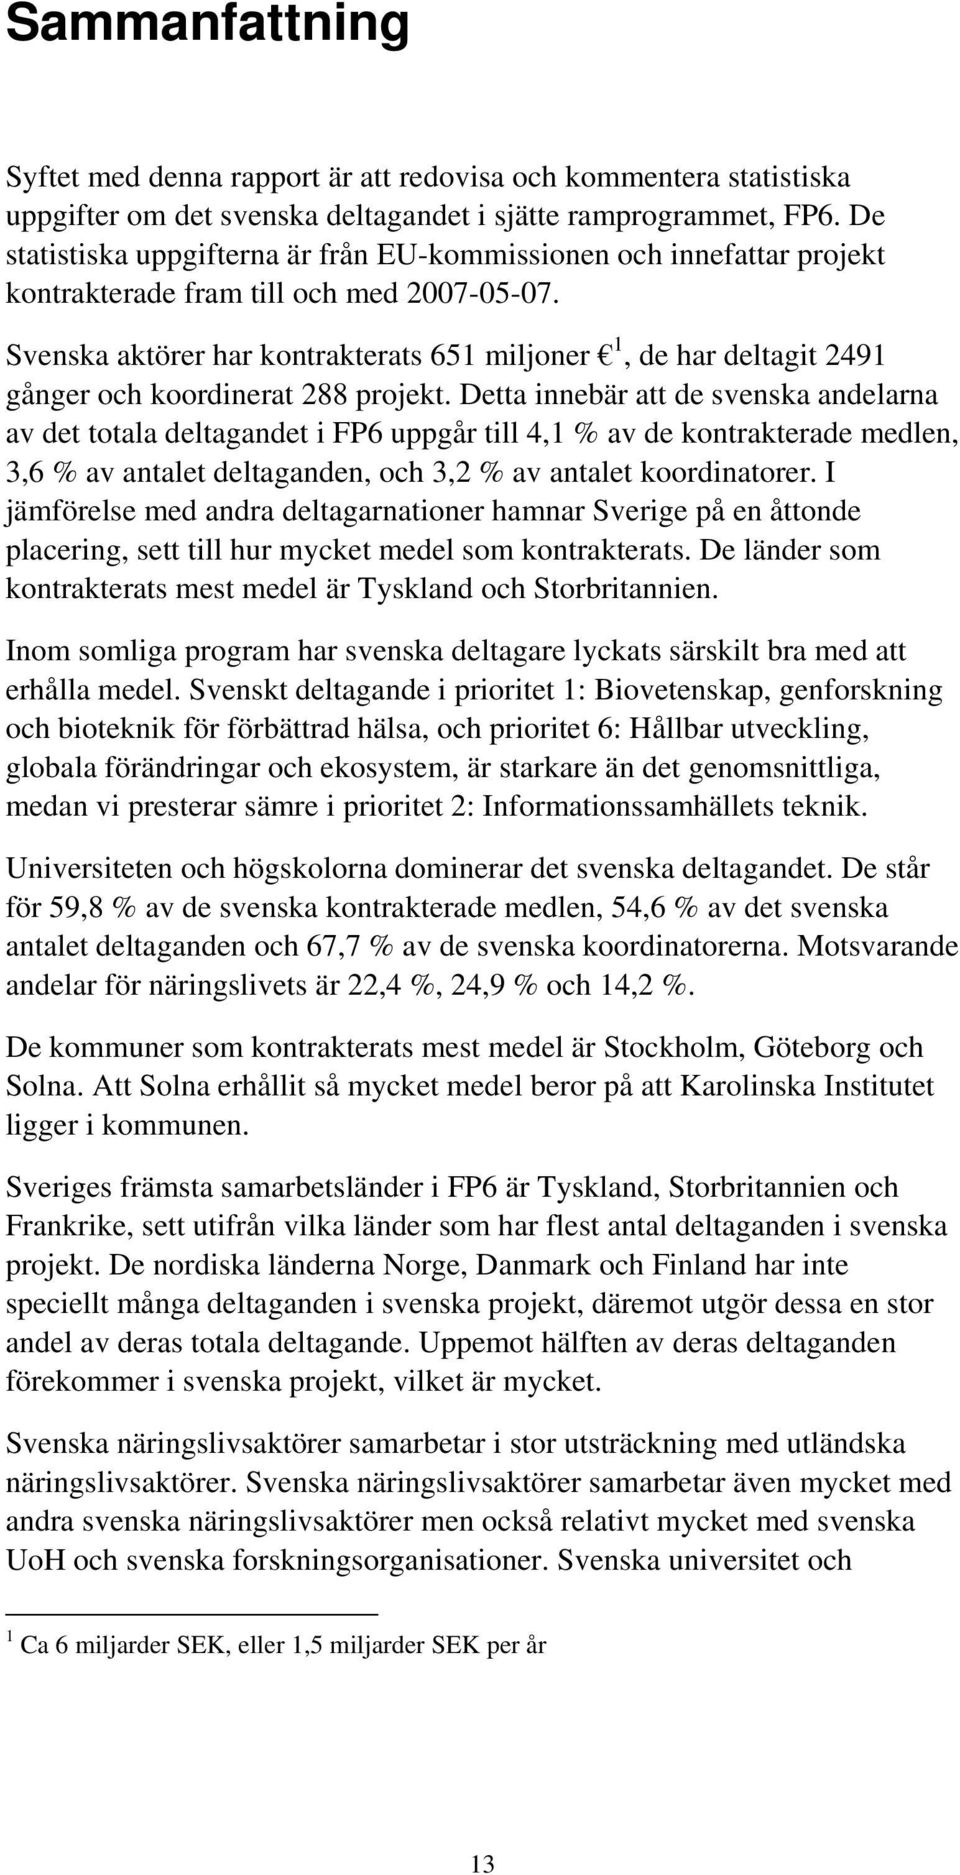 Svenska aktörer har kontrakterats 651 miljoner 1, de har deltagit 2491 gånger och koordinerat 288 projekt.